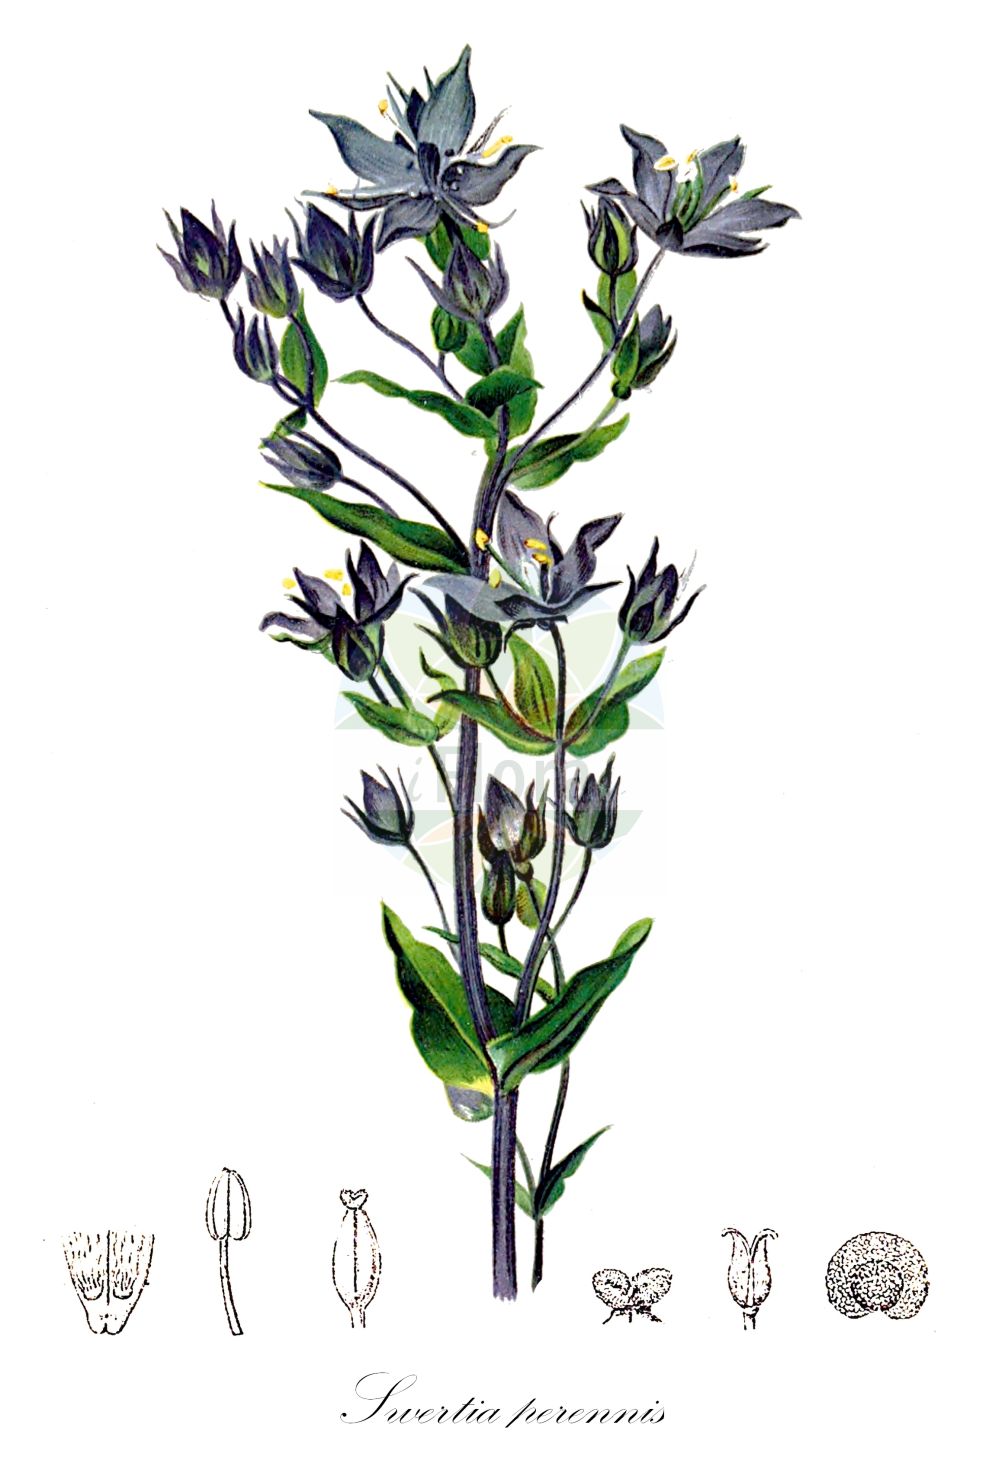 Historische Abbildung von Swertia perennis (Blauer Sumpfstern - Felwort). Das Bild zeigt Blatt, Bluete, Frucht und Same. ---- Historical Drawing of Swertia perennis (Blauer Sumpfstern - Felwort). The image is showing leaf, flower, fruit and seed.(Swertia perennis,Blauer Sumpfstern,Felwort,Swertia obtusa,Swertia perennis,Swertia punctata,Blauer Sumpfstern,Gebirgs-Blauer Sumpfstern,Gewoehnlicher Blauer Sumpfstern,Moorenzian,Sumpfenzian,Tarant,Felwort,Marsh Felwort,Star Swertia,Swertia,Sumpfstern,Felwort,Gentianaceae,Enziangewächse,Gentian family,Blatt,Bluete,Frucht,Same,leaf,flower,fruit,seed,Hartinger & von Dalla Torre (1806f))